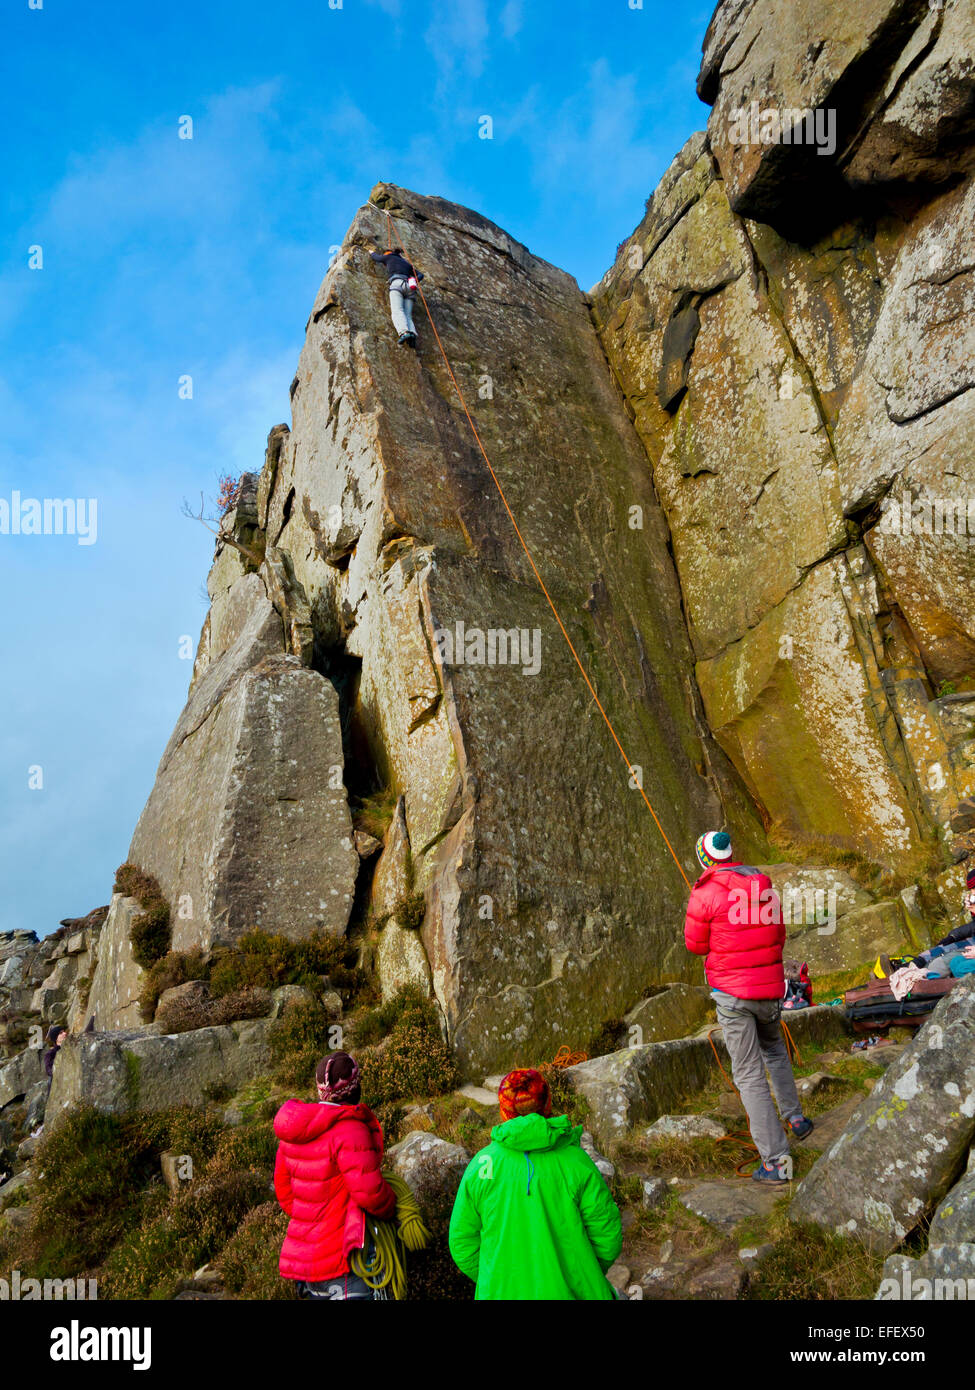 Gruppe von Bergsteigern, die gerade eines Freundes aufsteigender steilen Felswand auf Felsen am Curbar Rand Peak District Nationalpark Derbyshire UK Stockfoto